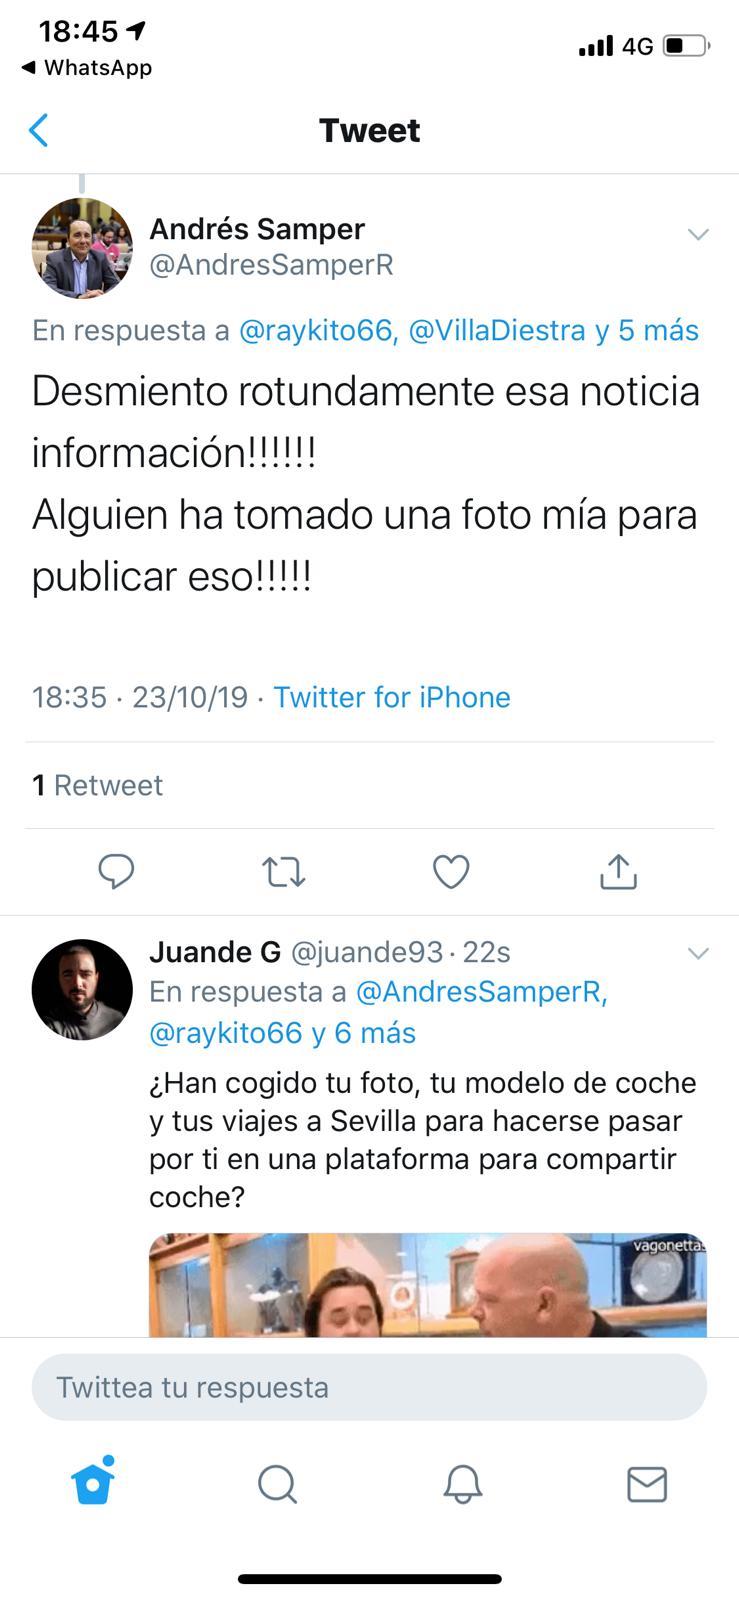 Tuit del parlamentario andaluz Andrés Samper Rueda